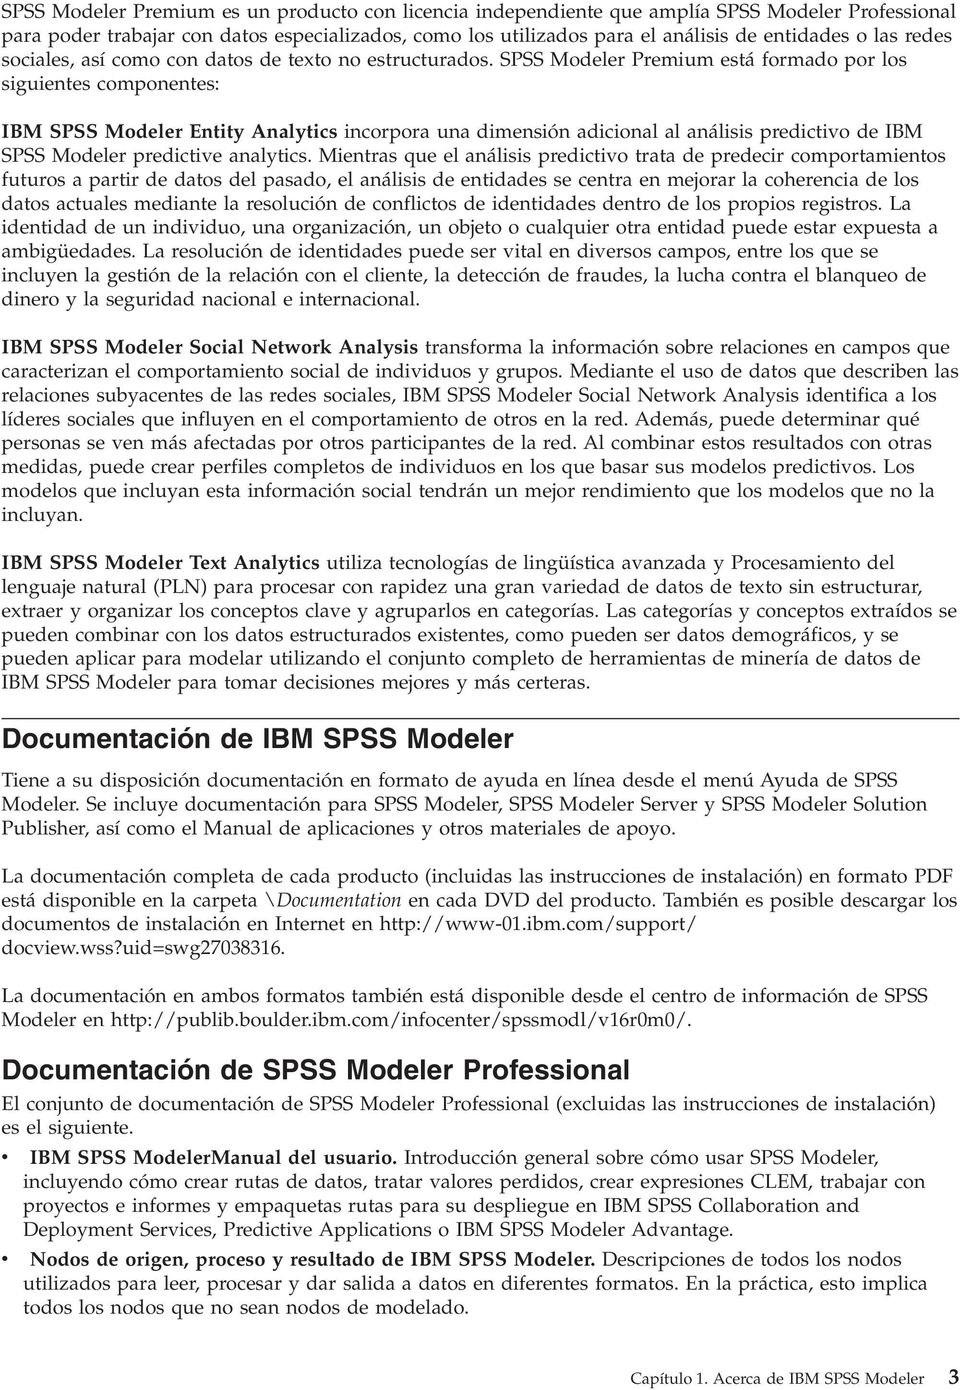 SPSS Modeler Premium está formado por los siguientes componentes: IBM SPSS Modeler Entity Analytics incorpora una dimensión adicional al análisis predictivo de IBM SPSS Modeler predictive analytics.